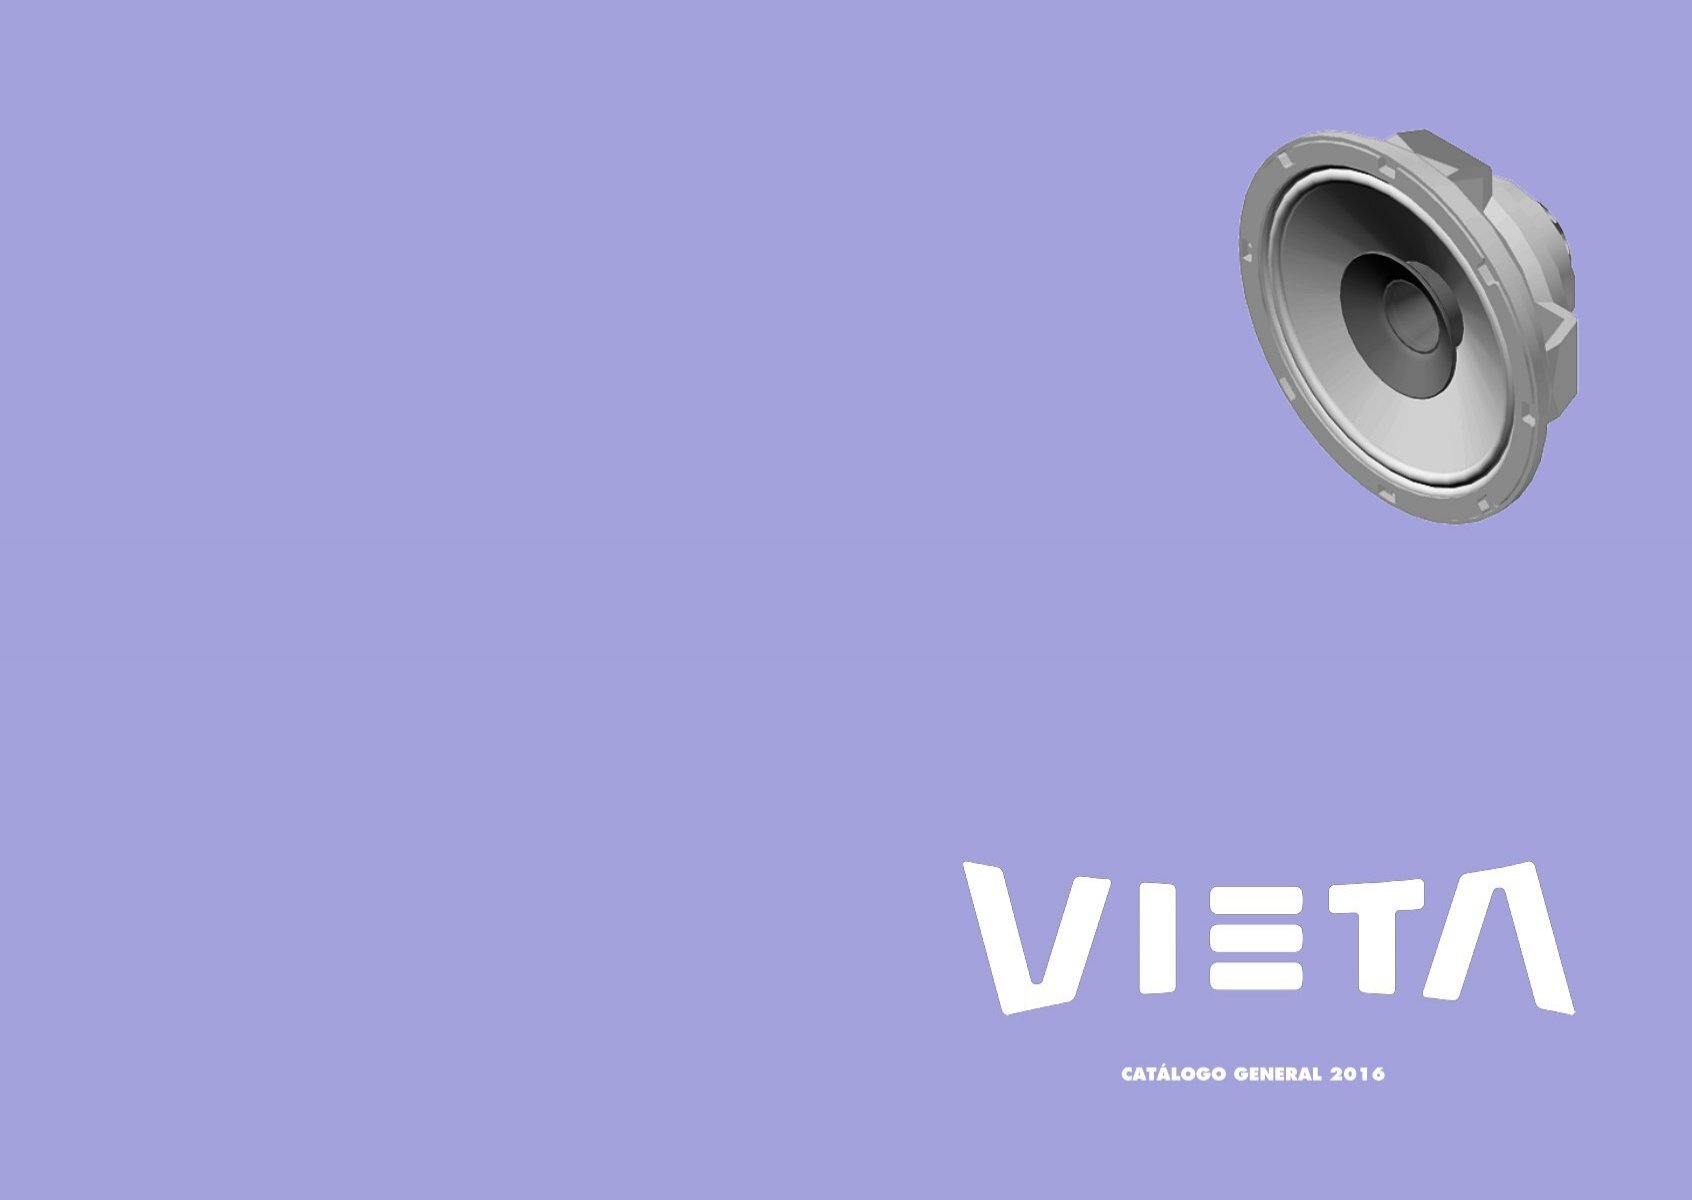 Vieta DO 44: altavoces de altas prestaciones acústicas para